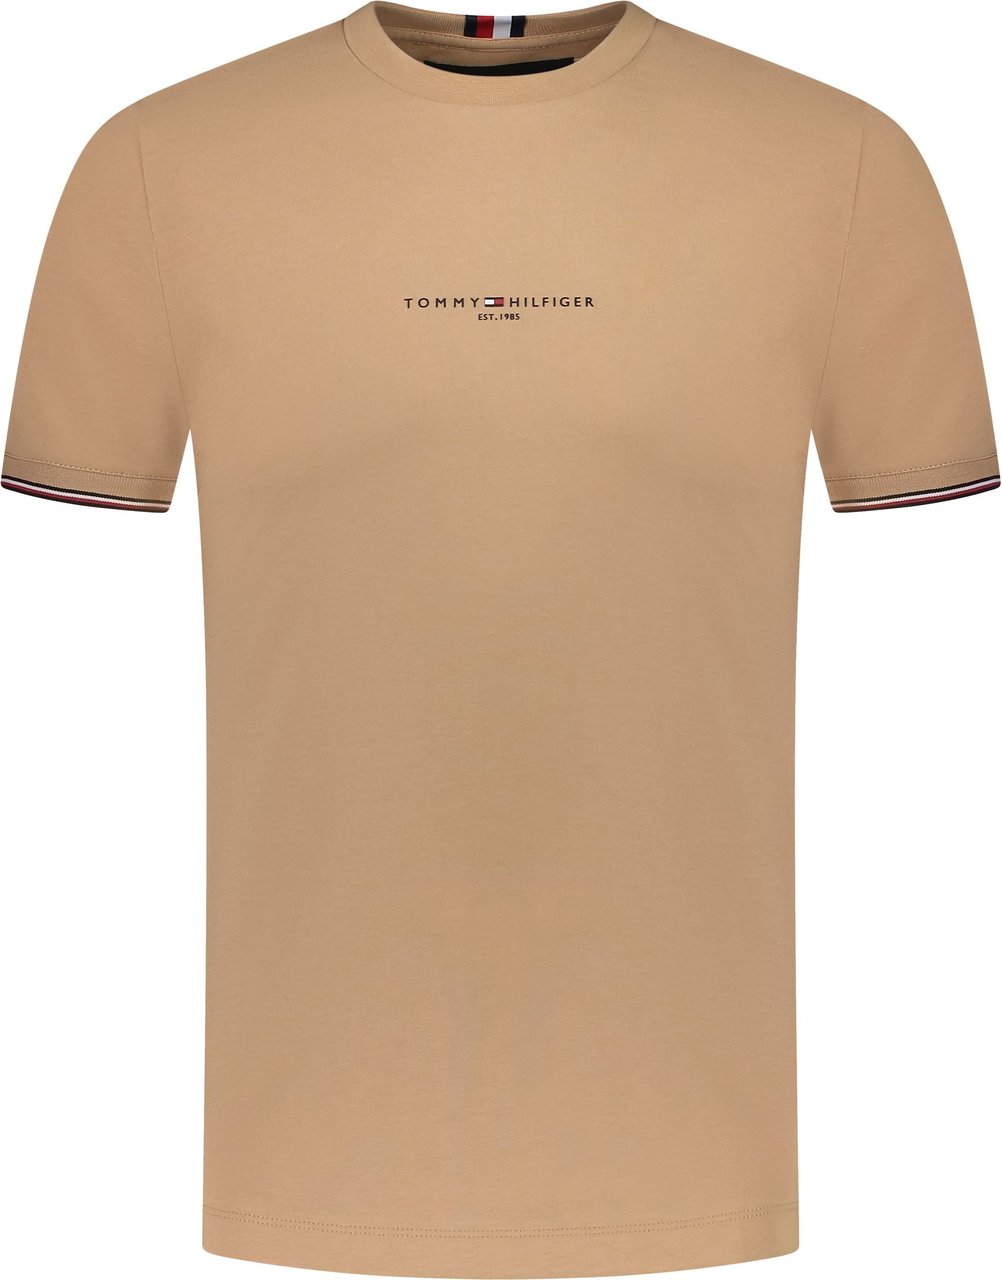 Tommy Hilfiger T-shirt Bruin Bruin